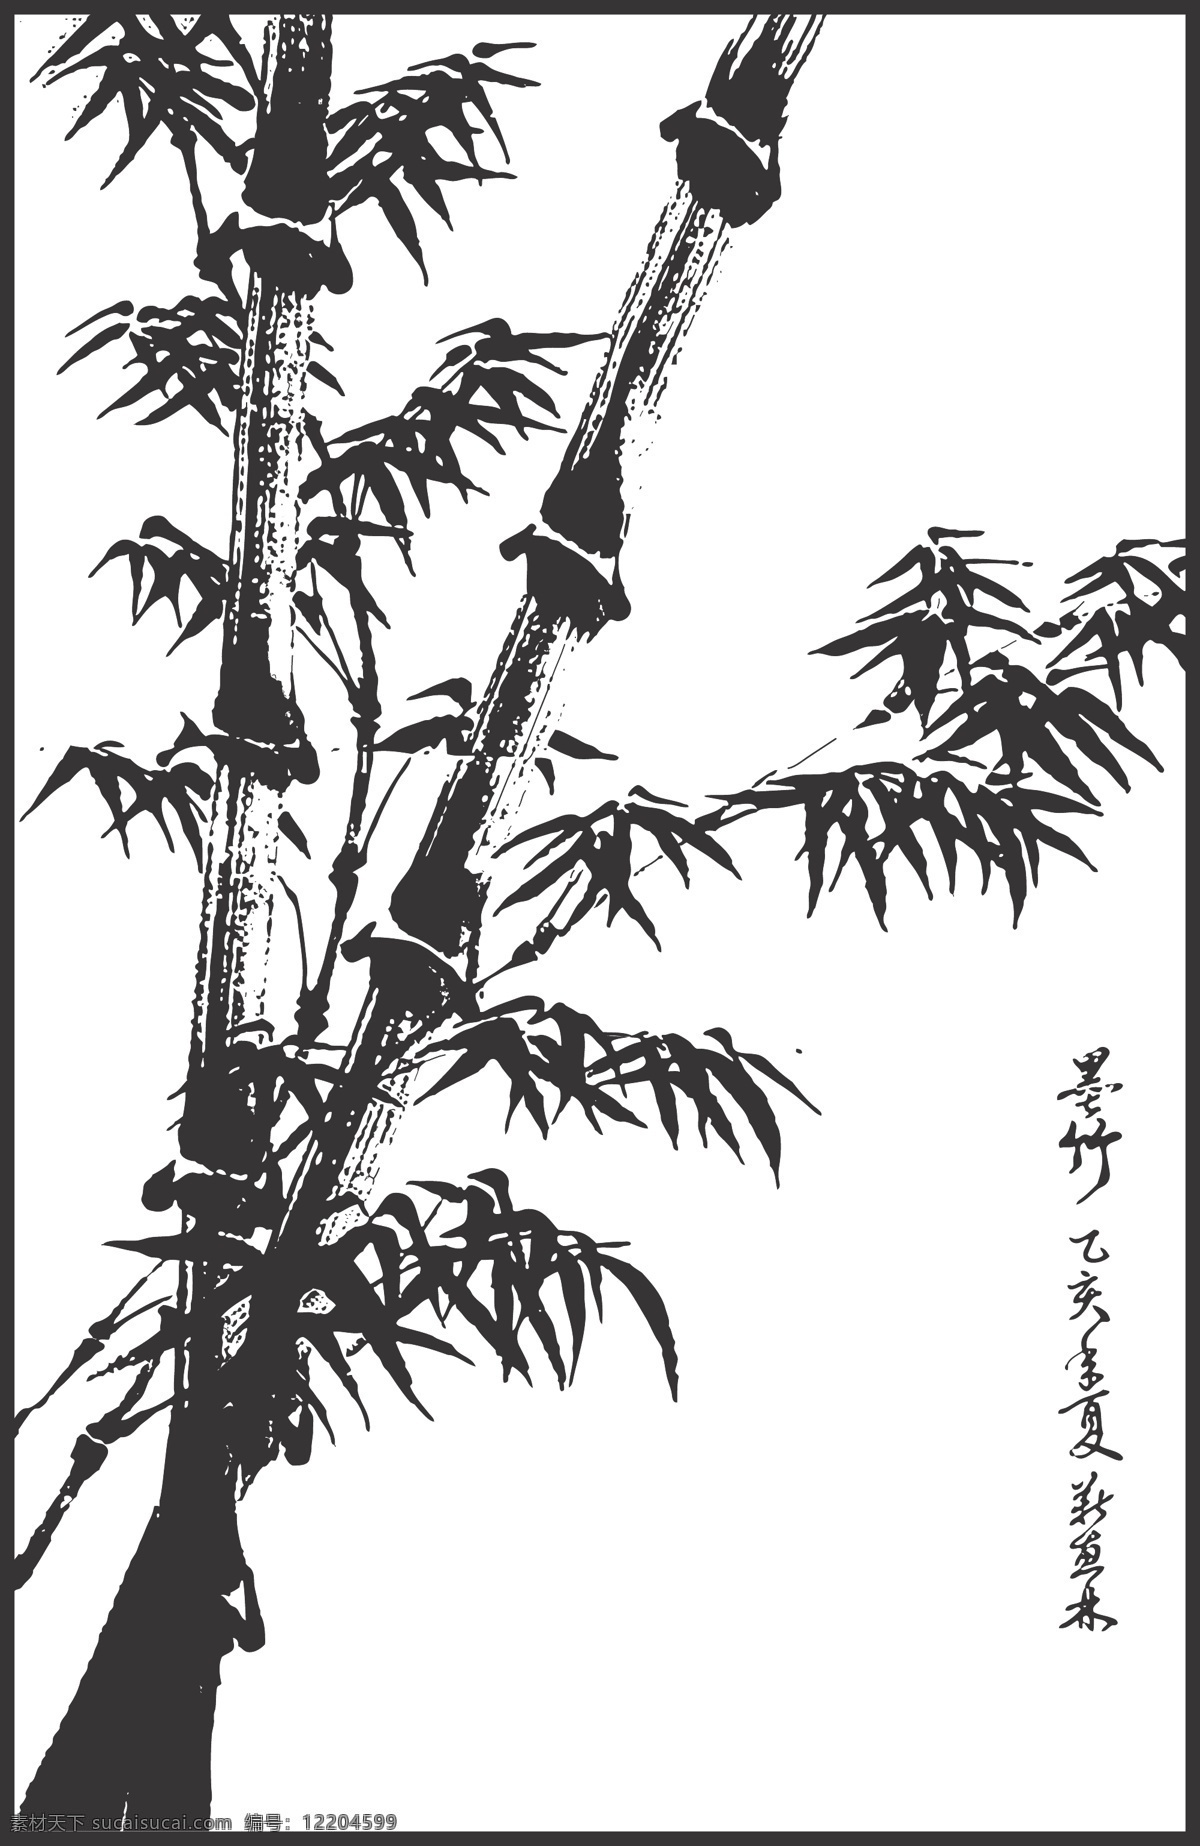 竹子 线条 矢量 装饰 字画 插画 白描 植物 挺拔 修长 四季青翠 傲雪凌霜 生物世界 树木树叶